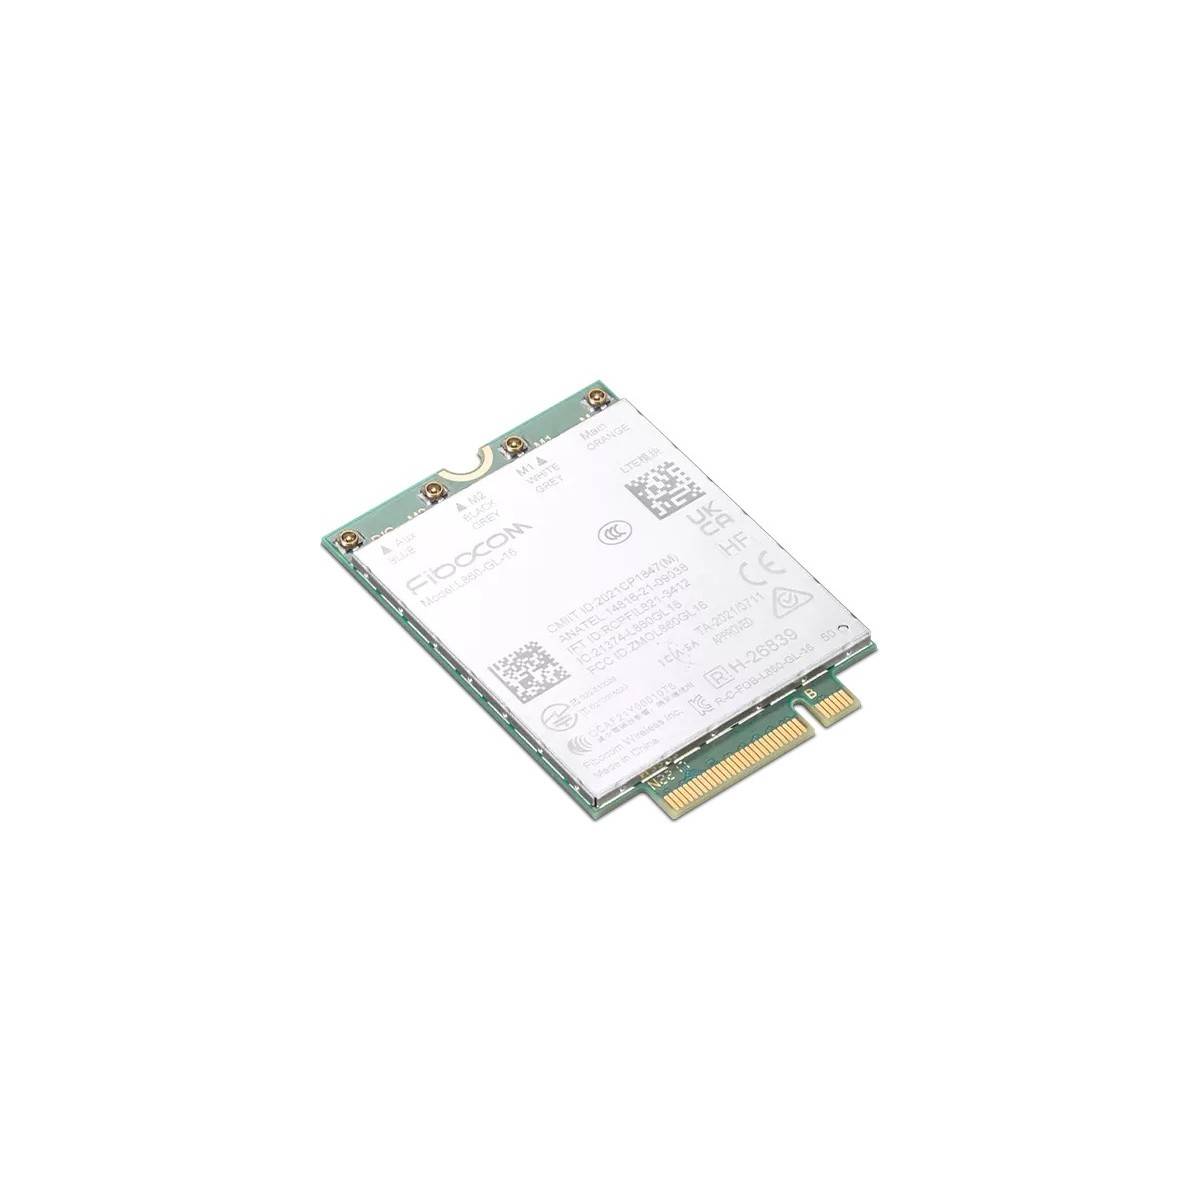 Lenovo ThinkPad Fibocom L860-GL-16 CAT16 4G LTE WWAN Module for T16